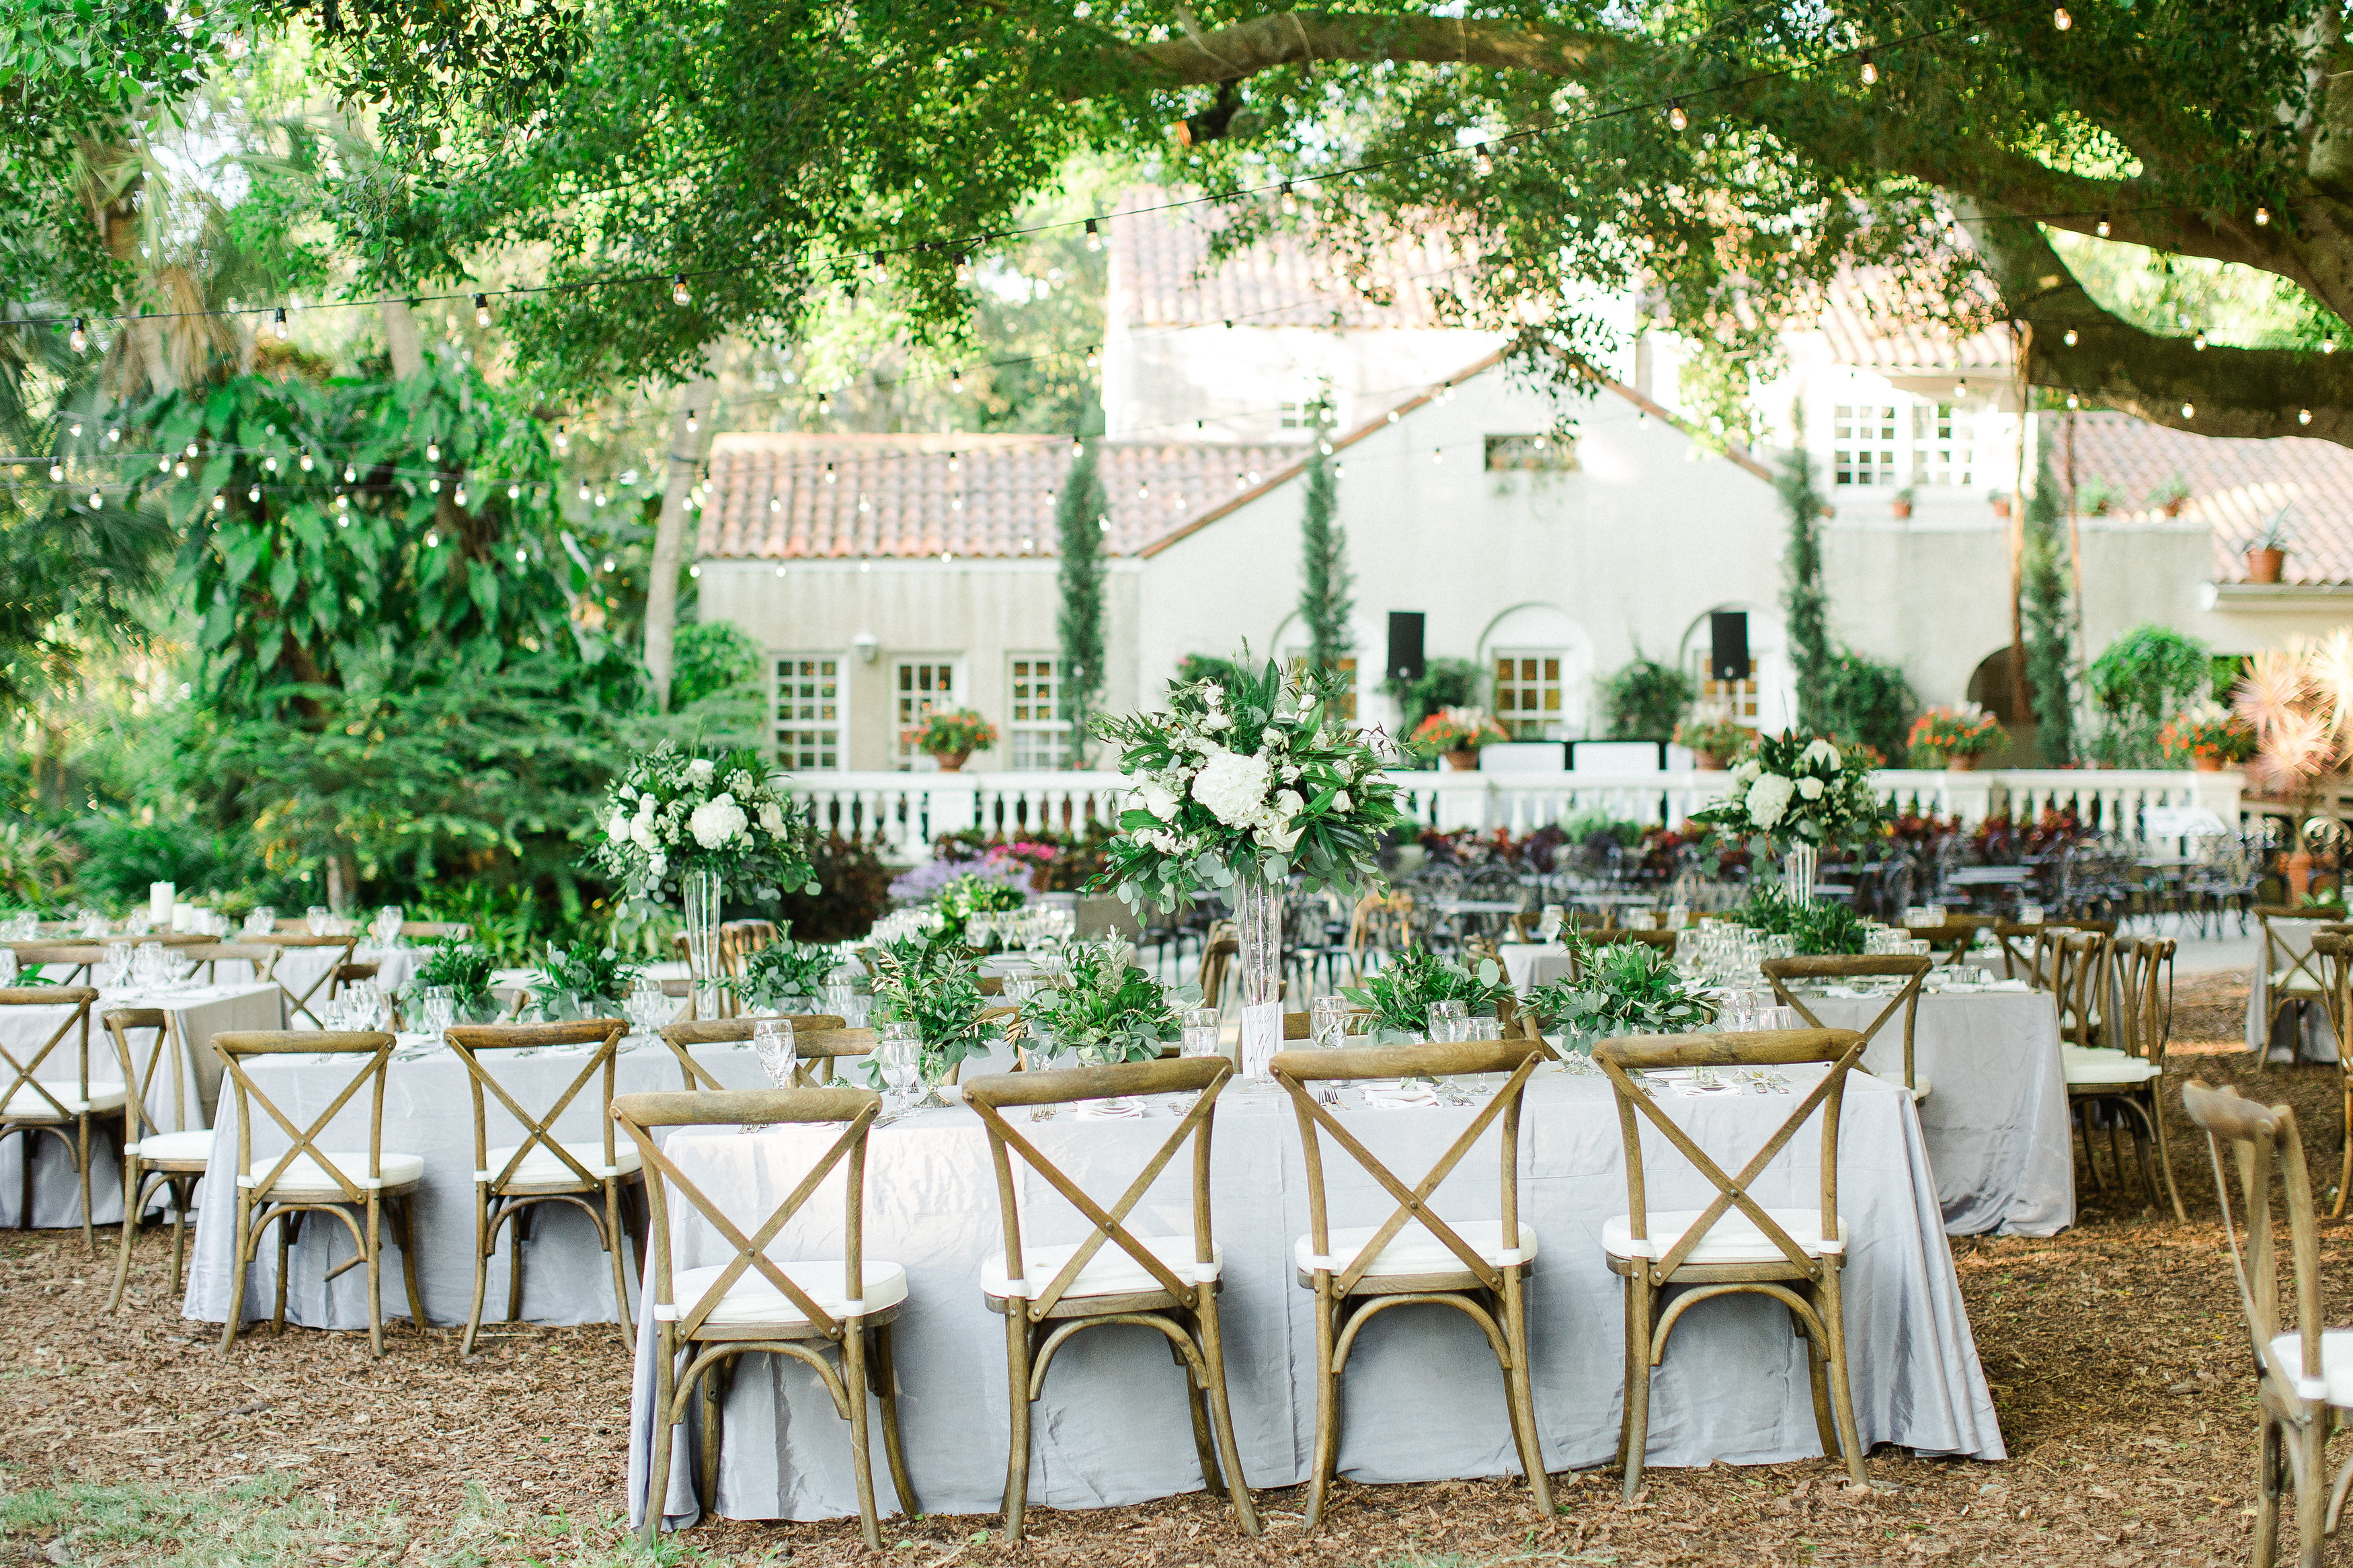 Florida Outdoor Wedding Reception in Garden